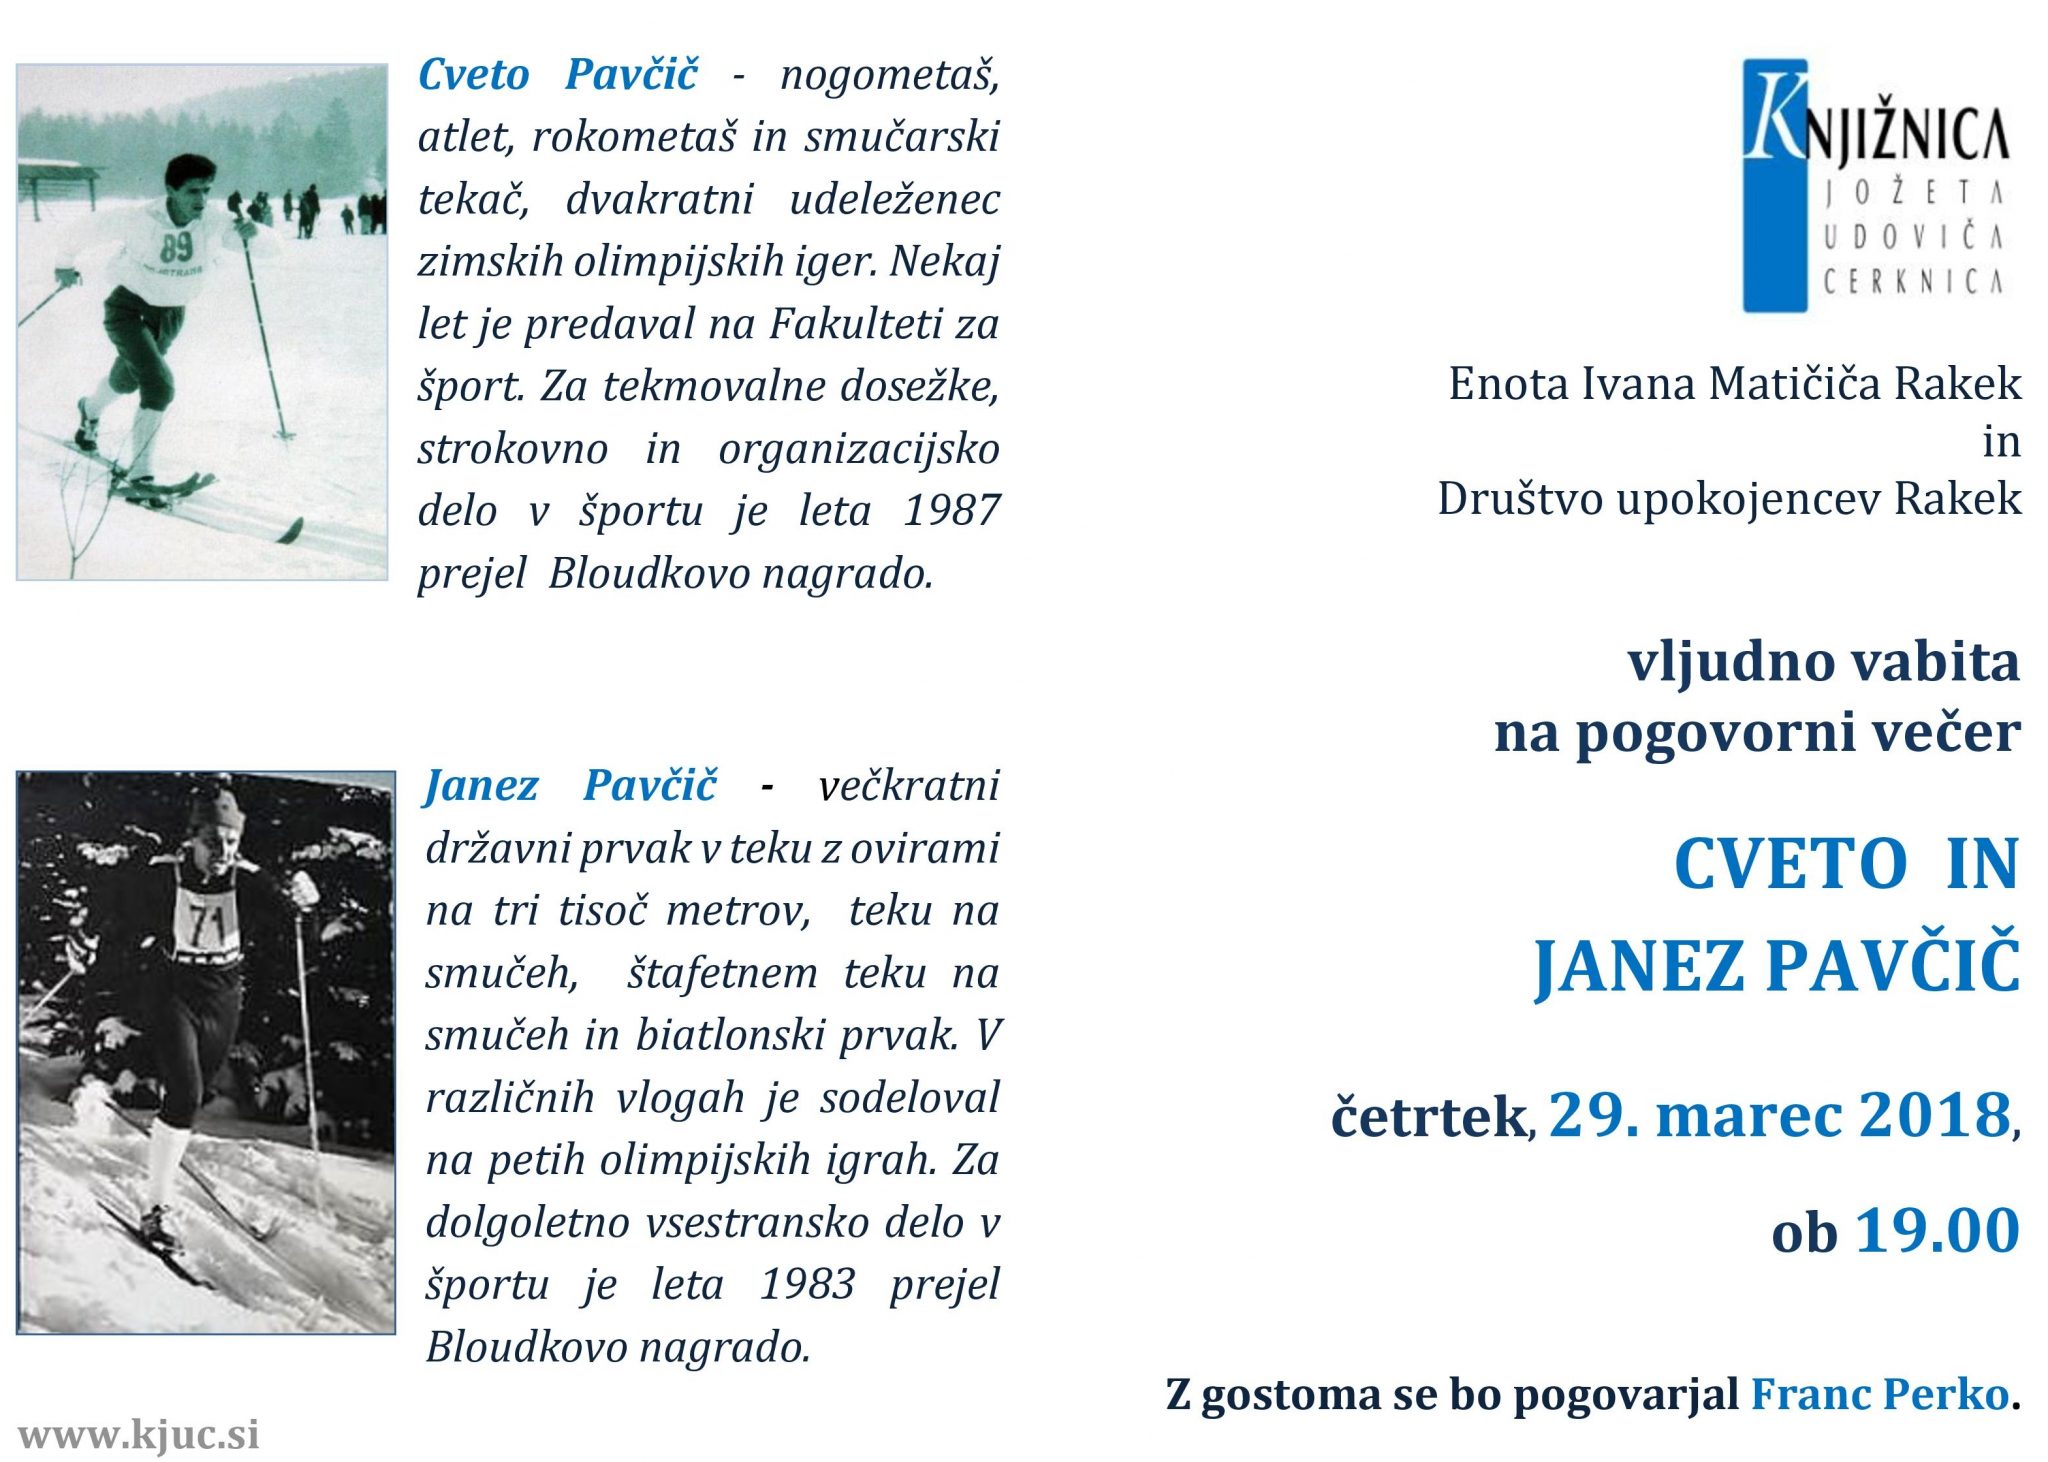 cover 2 - Cveto in Janez Pavčič - pogovorni večer